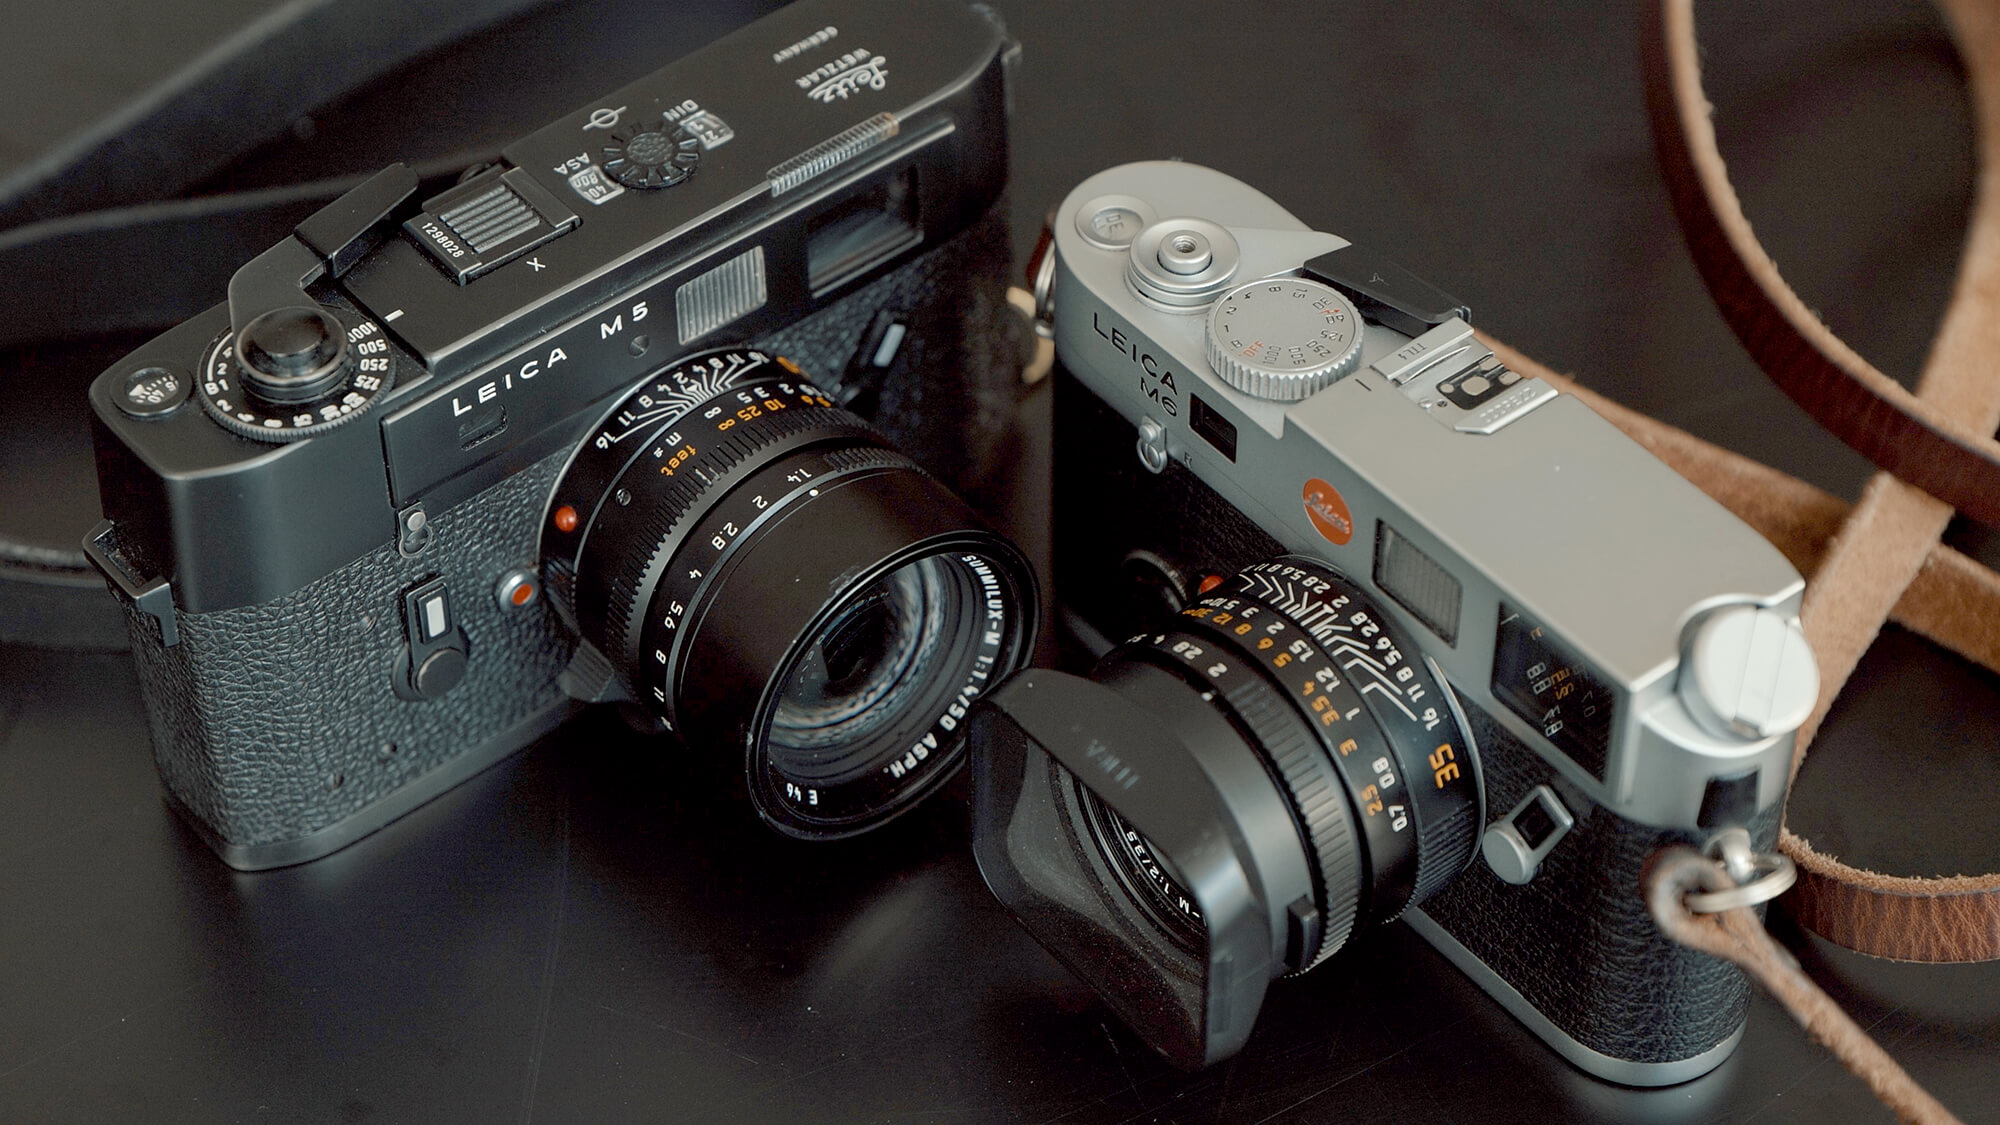 Leica M6 vs Leica M5